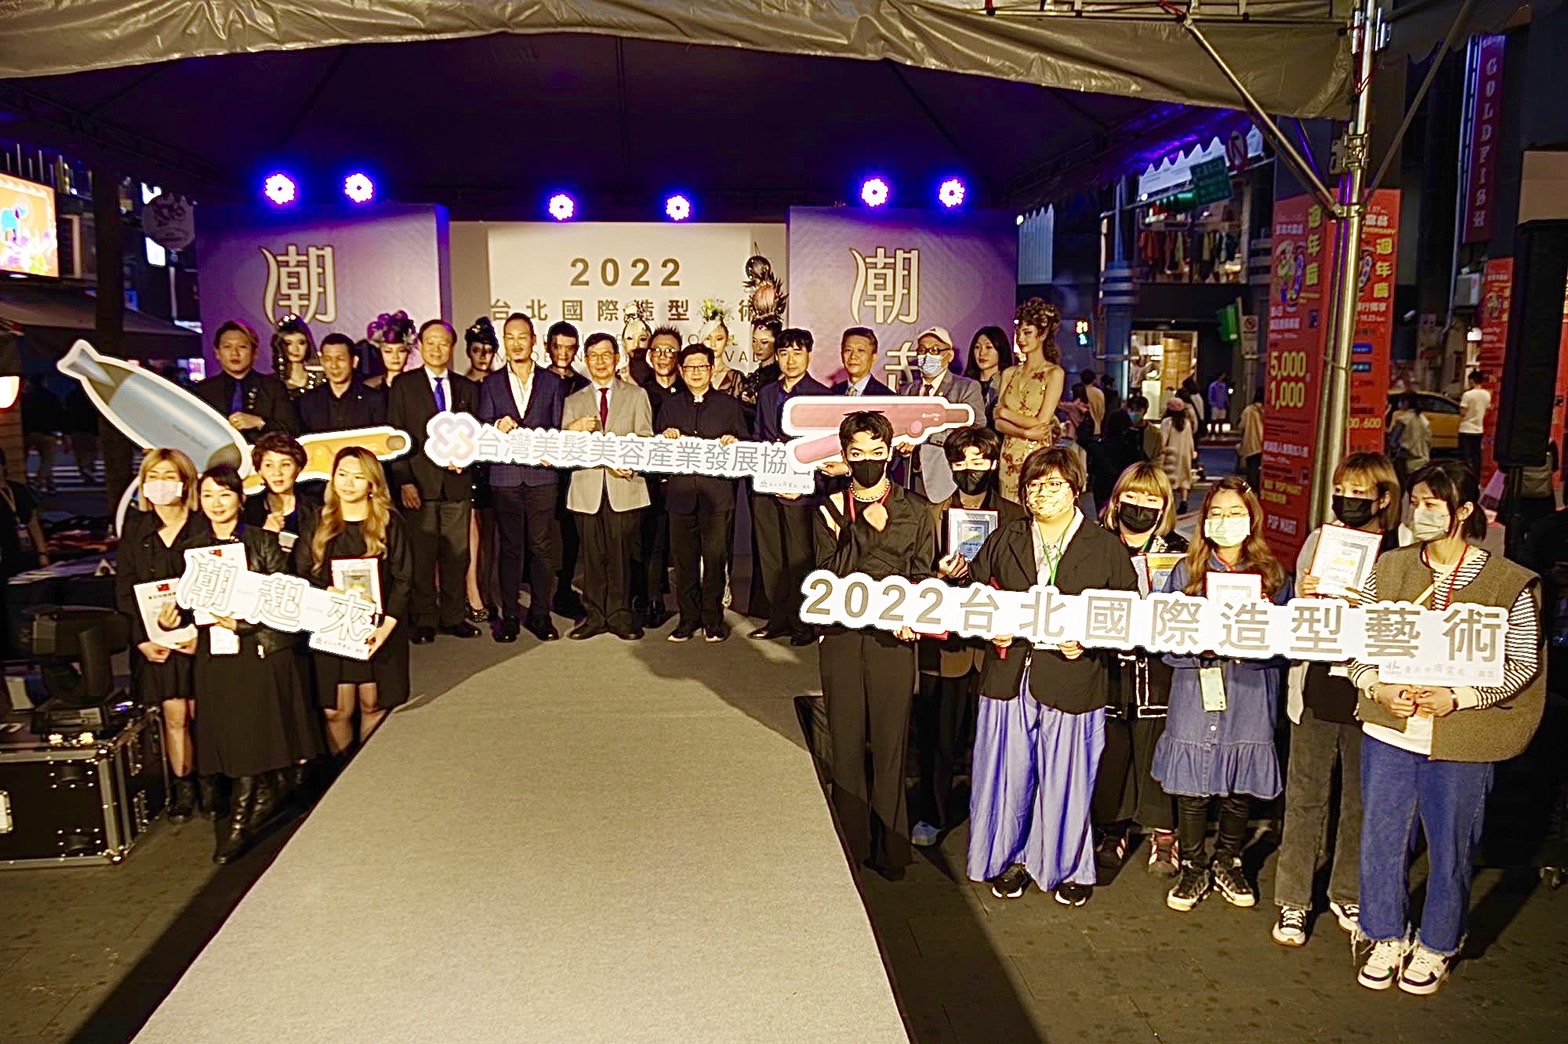 台北國際造型藝術節 美髮競賽得獎名單出爐   60種必梳、必吹的潮髮型登場  OMC得獎作品一次看